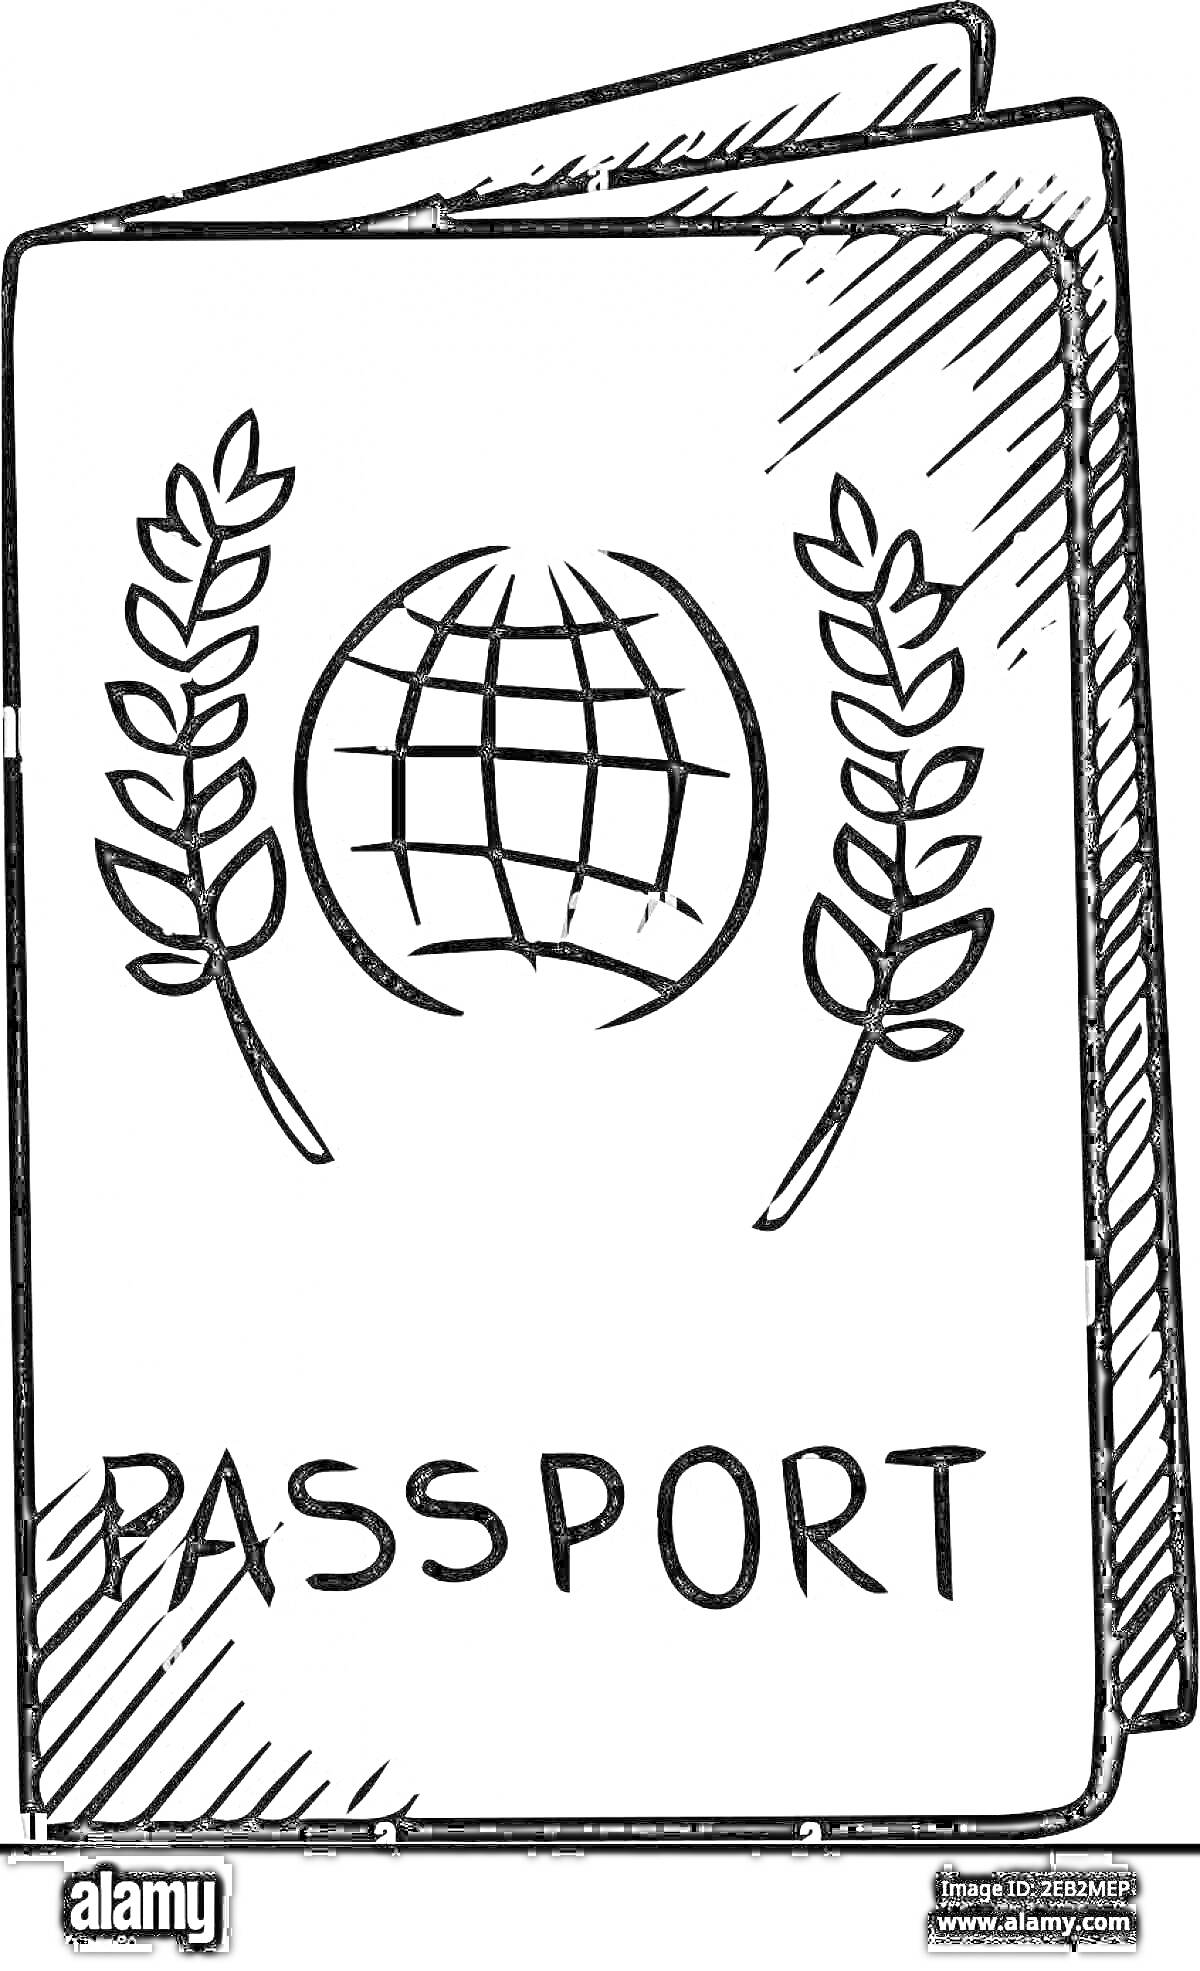 Раскраска На обложке нарисованы два стилизованных паспорта. На передней стороне изображены глобус и две ветви по бокам. Внизу имеется надпись 